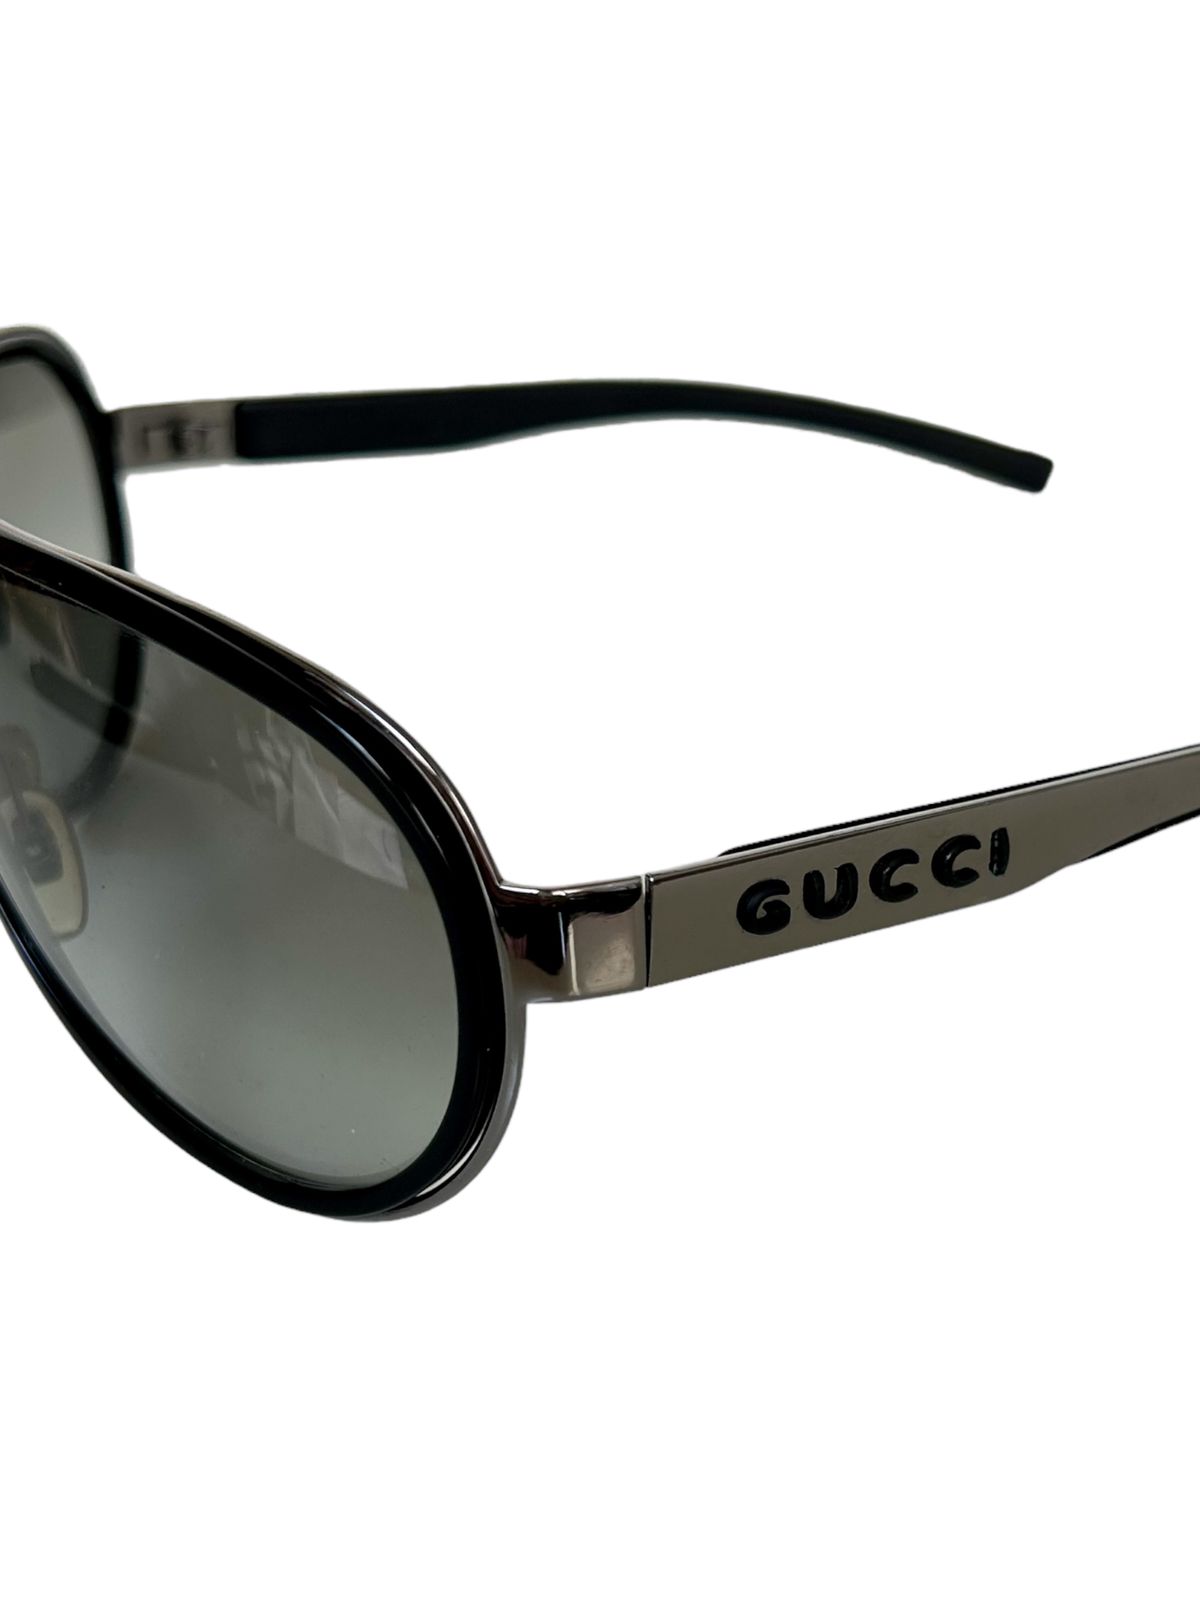 Óculos Gucci Prata com Preto com Caixa